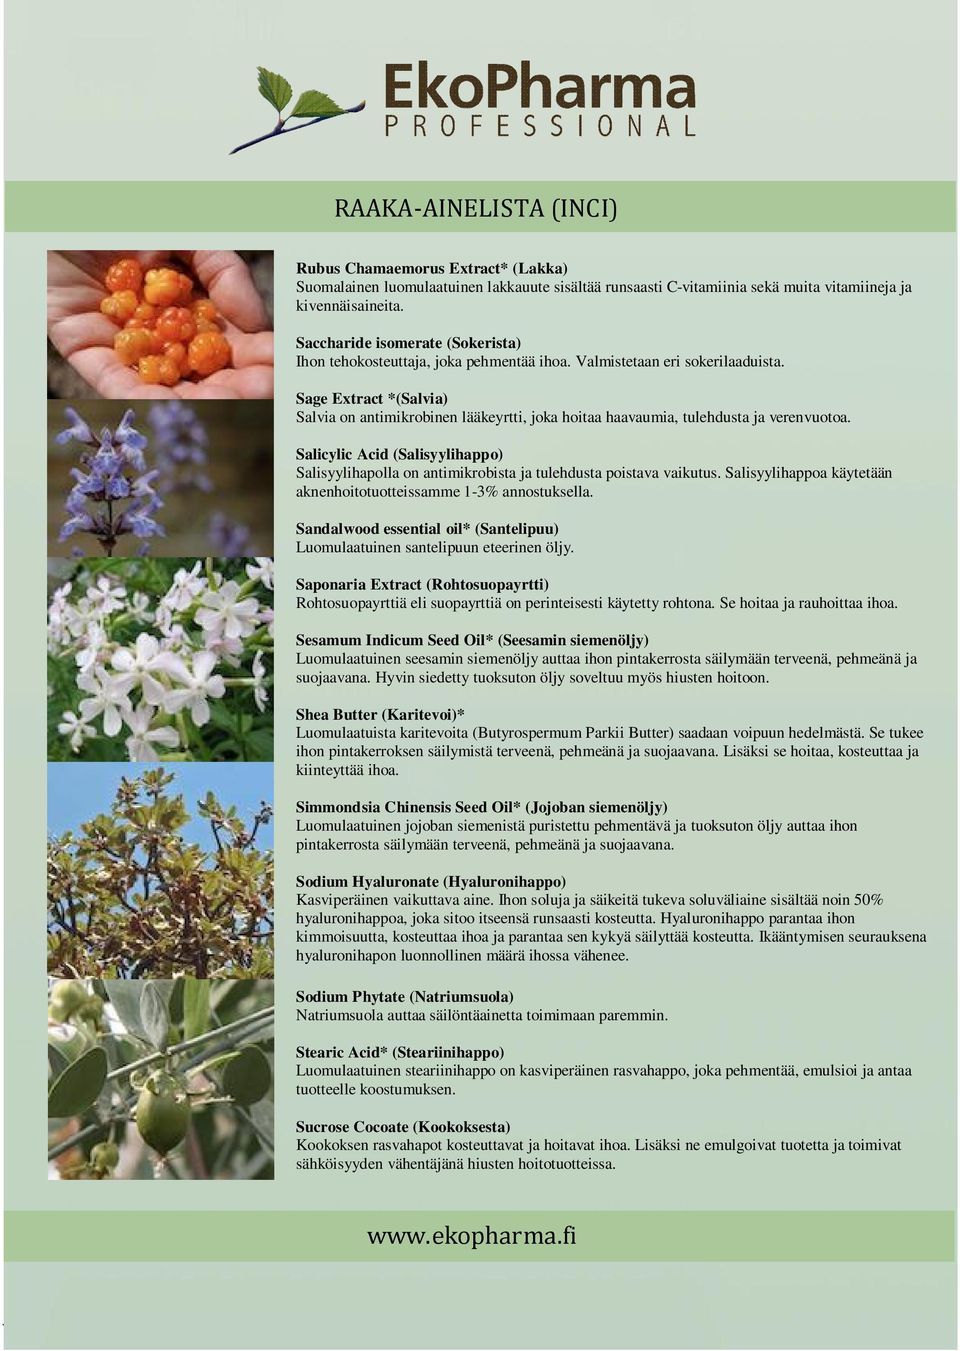 Sage Extract *(Salvia) Salvia on antimikrobinen lääkeyrtti, joka hoitaa haavaumia, tulehdusta ja verenvuotoa.